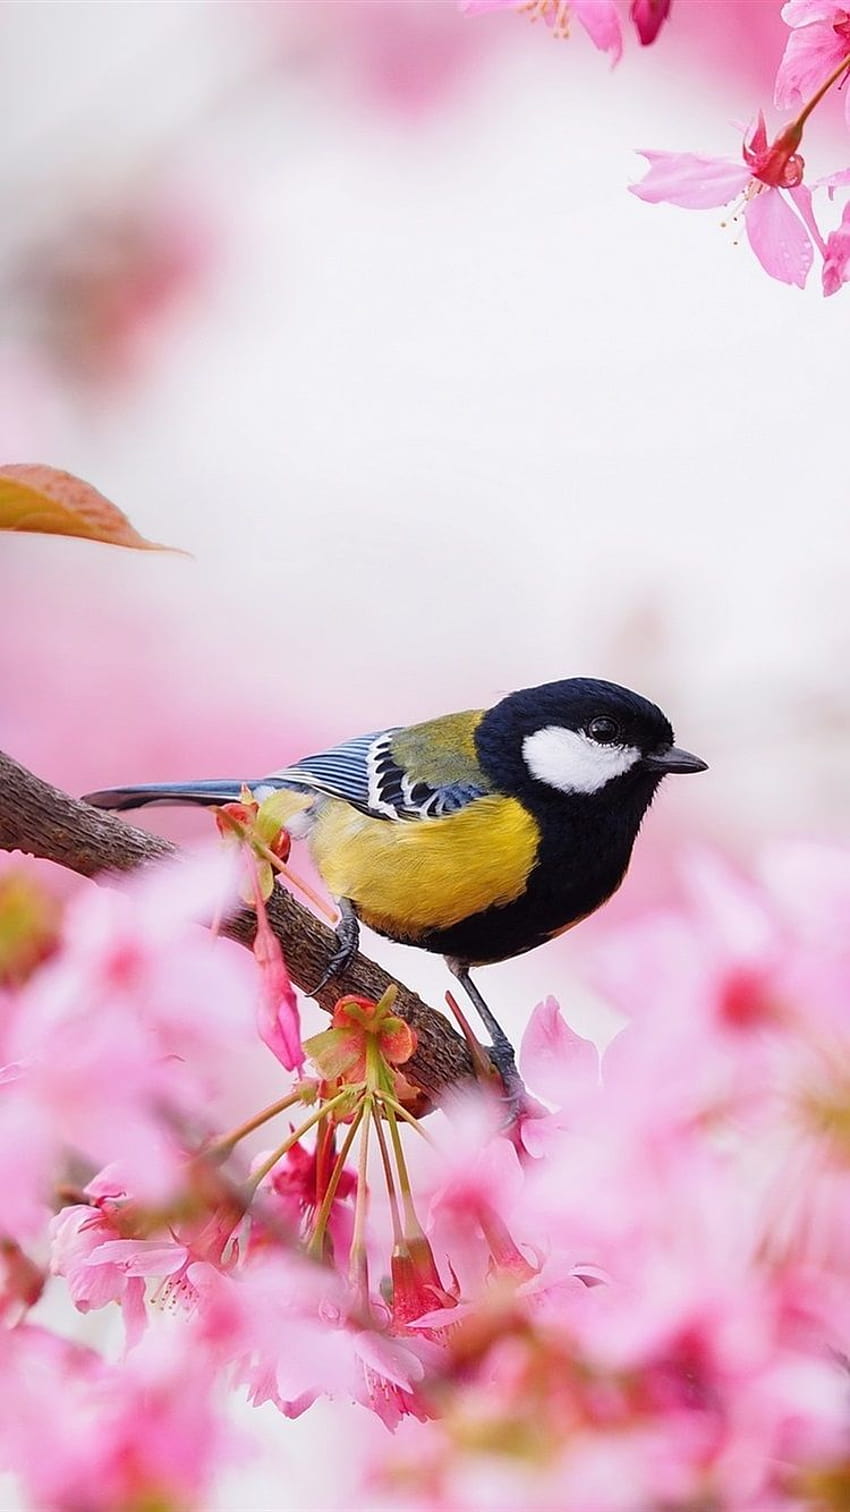 15 Birds of Prey iPhone Wallpapers - Wallpaperboat